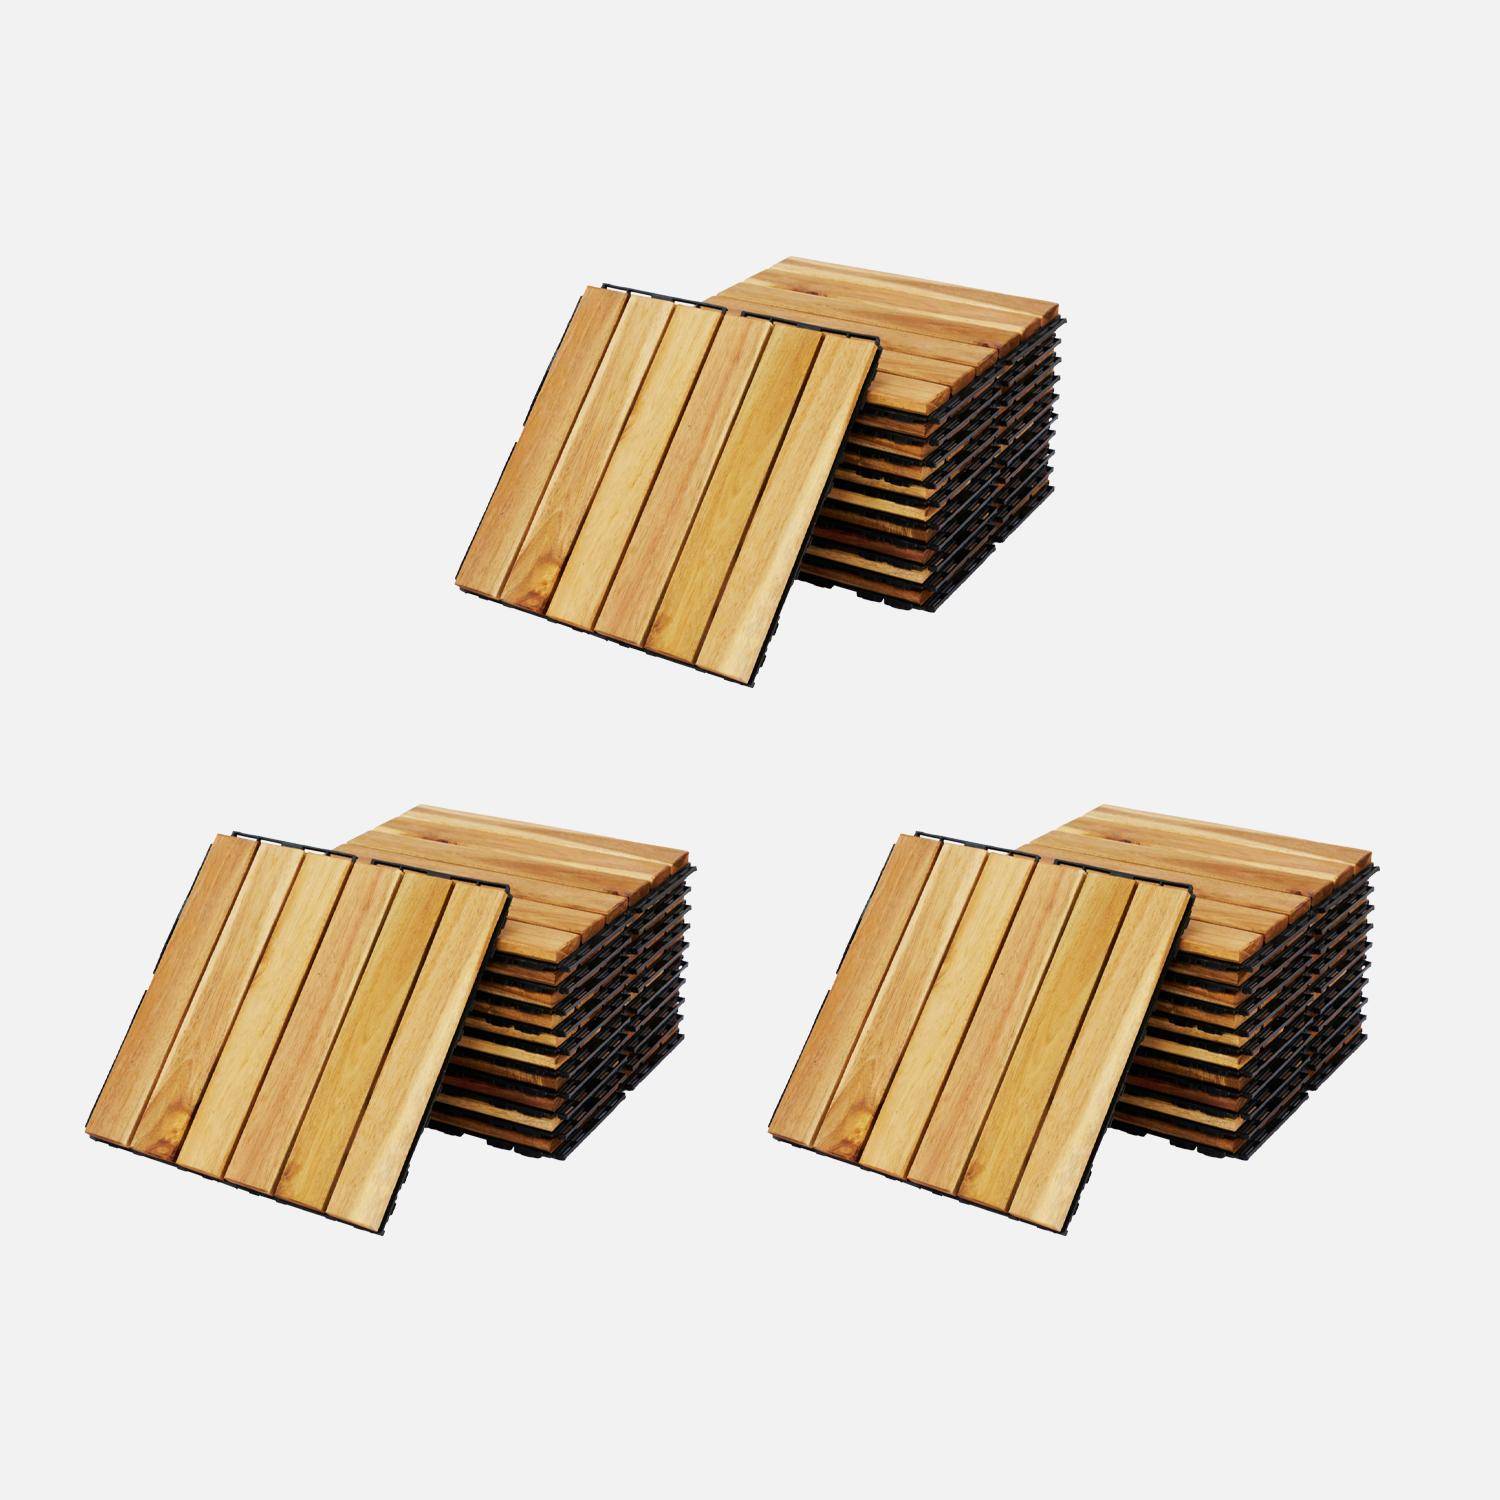 Lote de 36 ladrilhos para decks de madeira de acácia 30x30cm, padrão linear, ripado, de encaixe,sweeek,Photo1